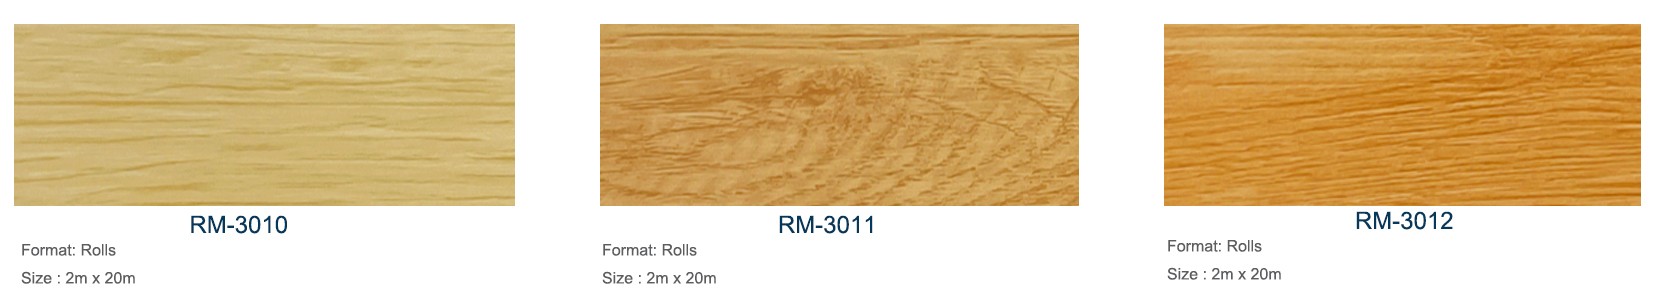 Relle wooden heterogneous floor